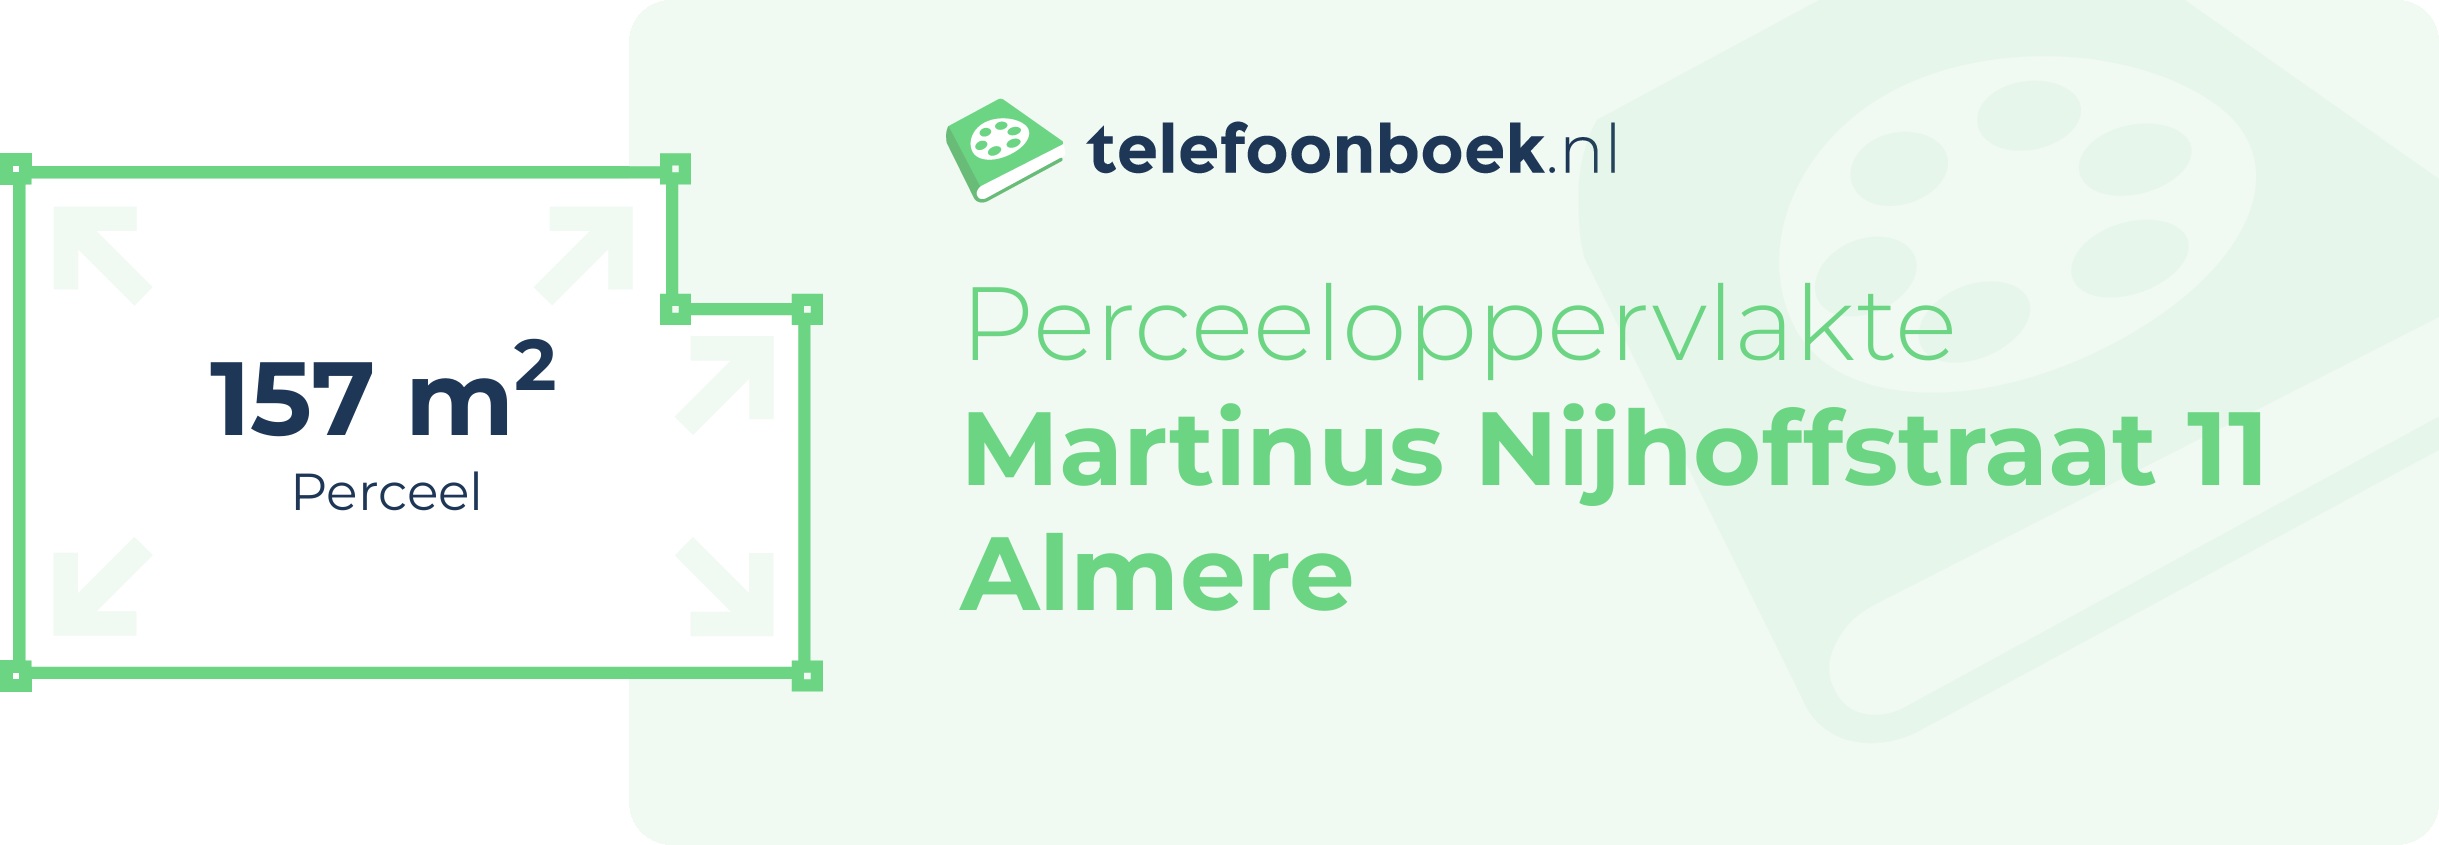 Perceeloppervlakte Martinus Nijhoffstraat 11 Almere